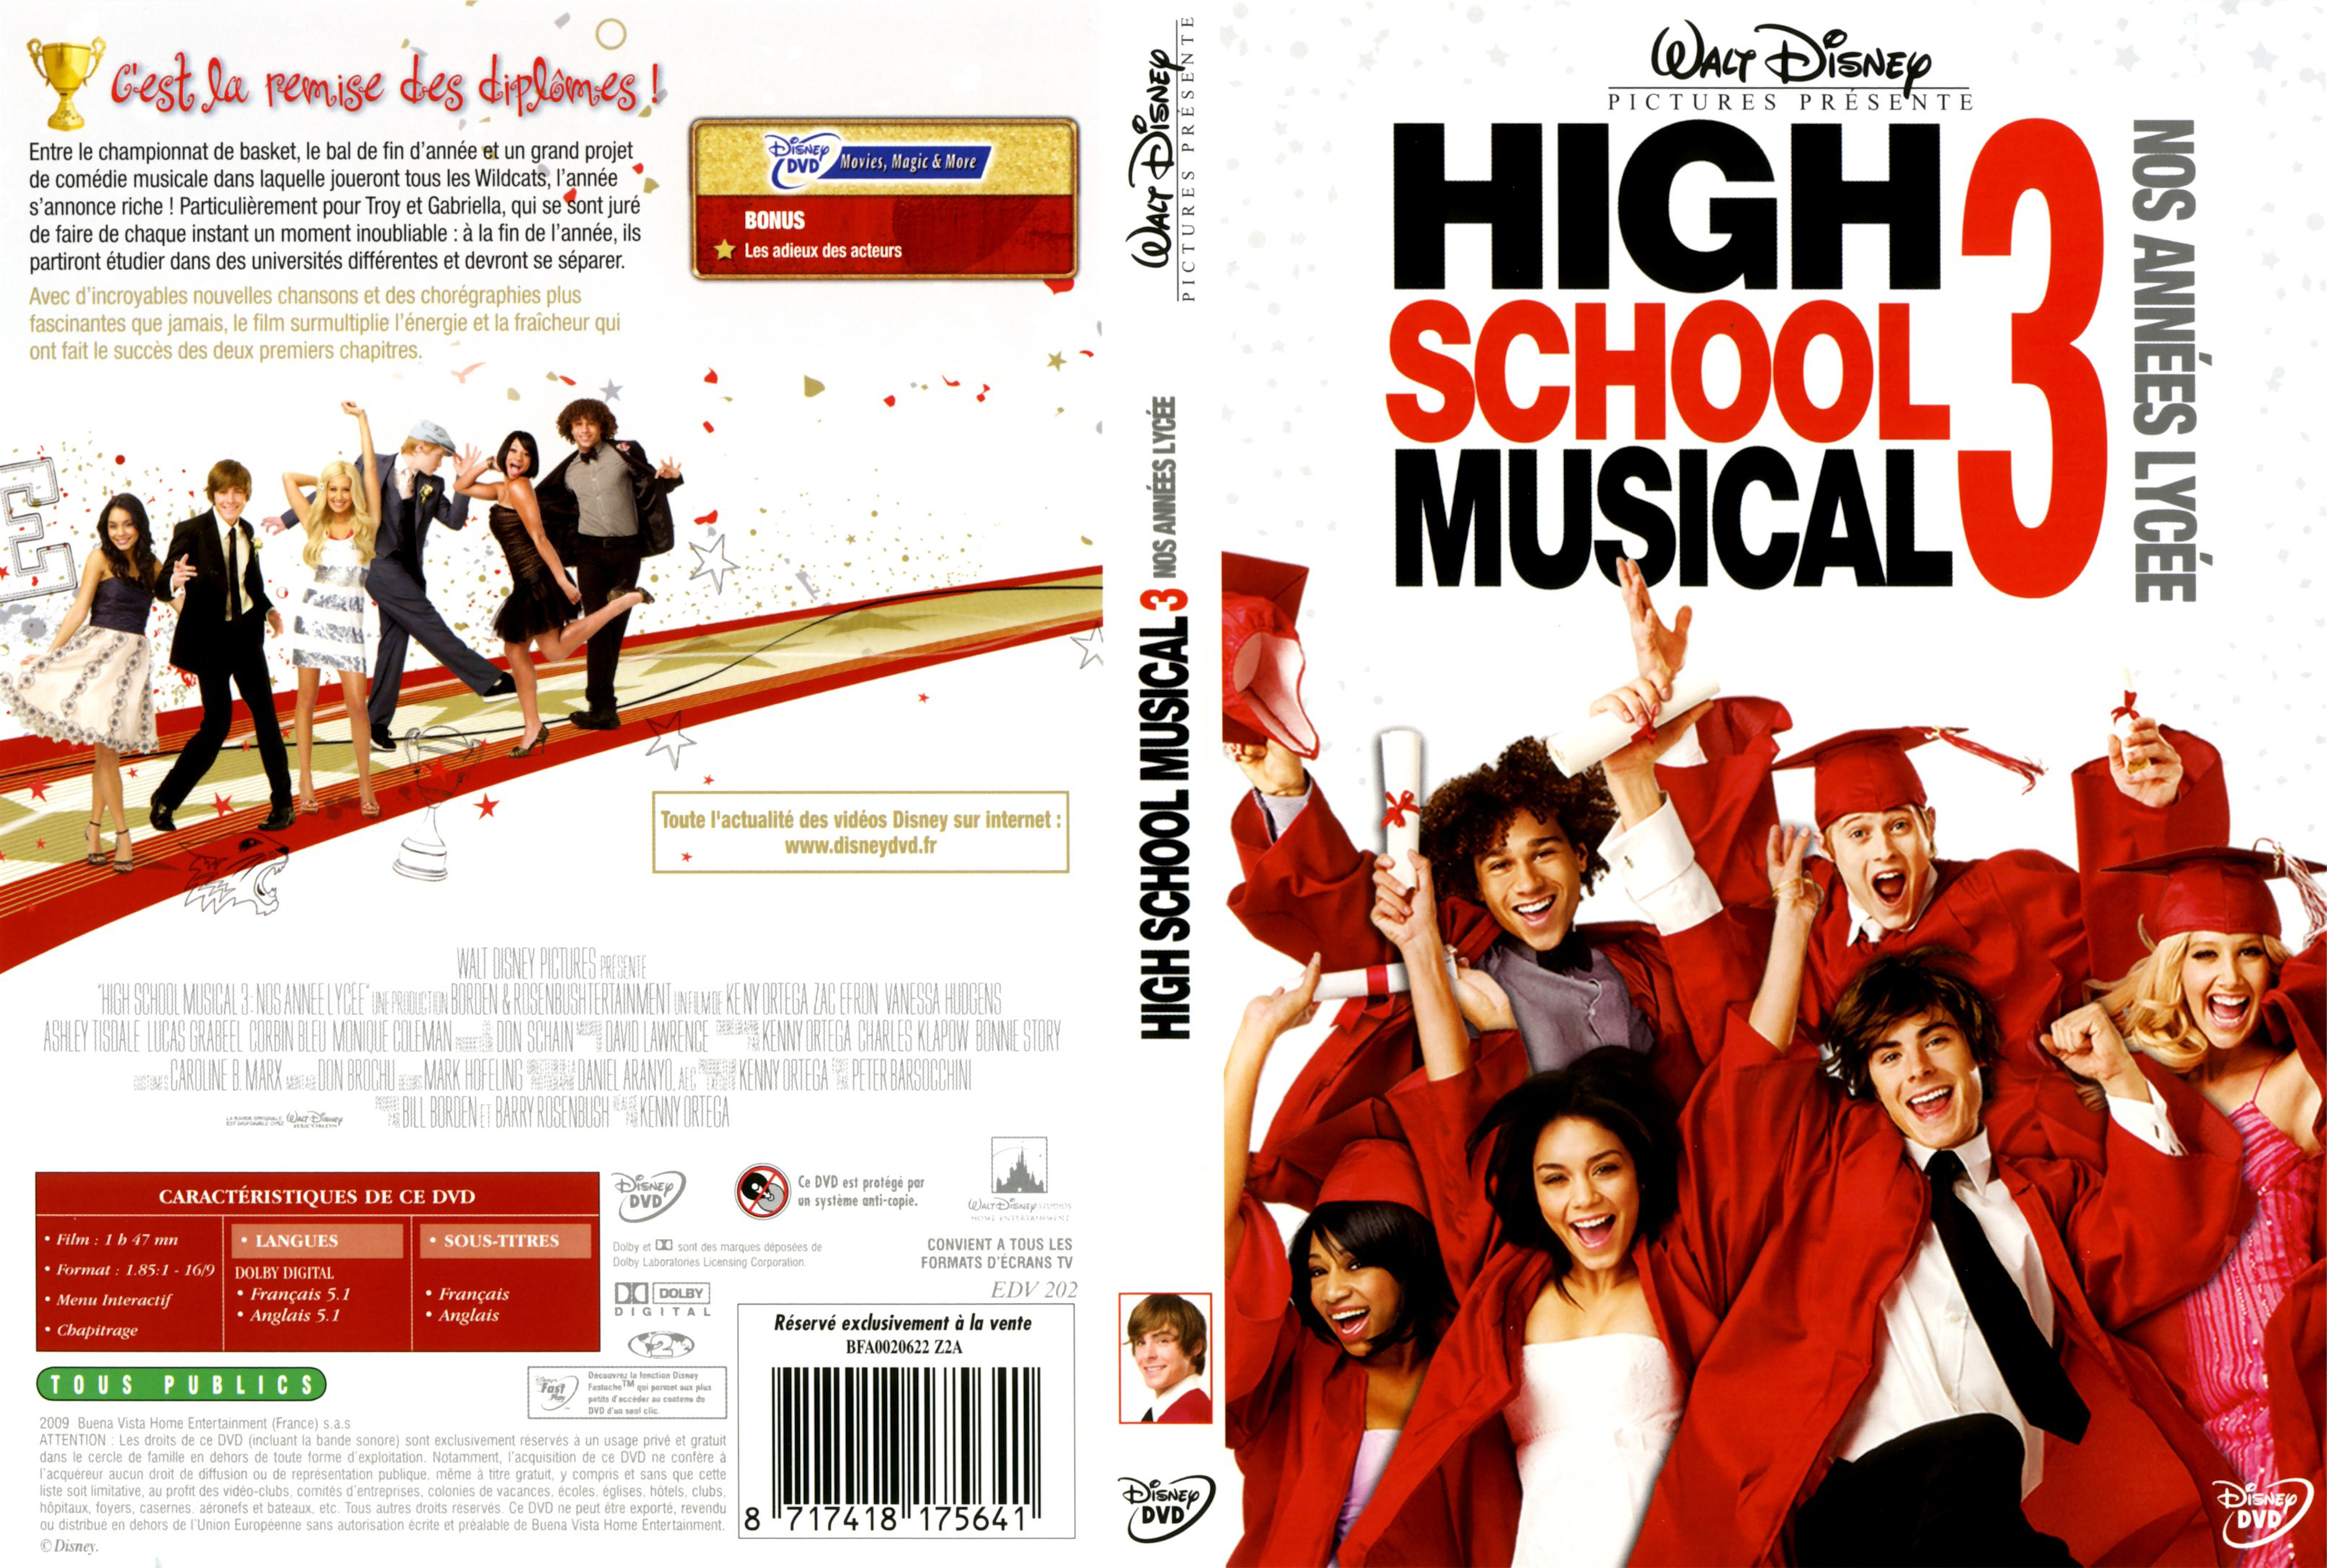 Jaquette DVD High School Musical 3